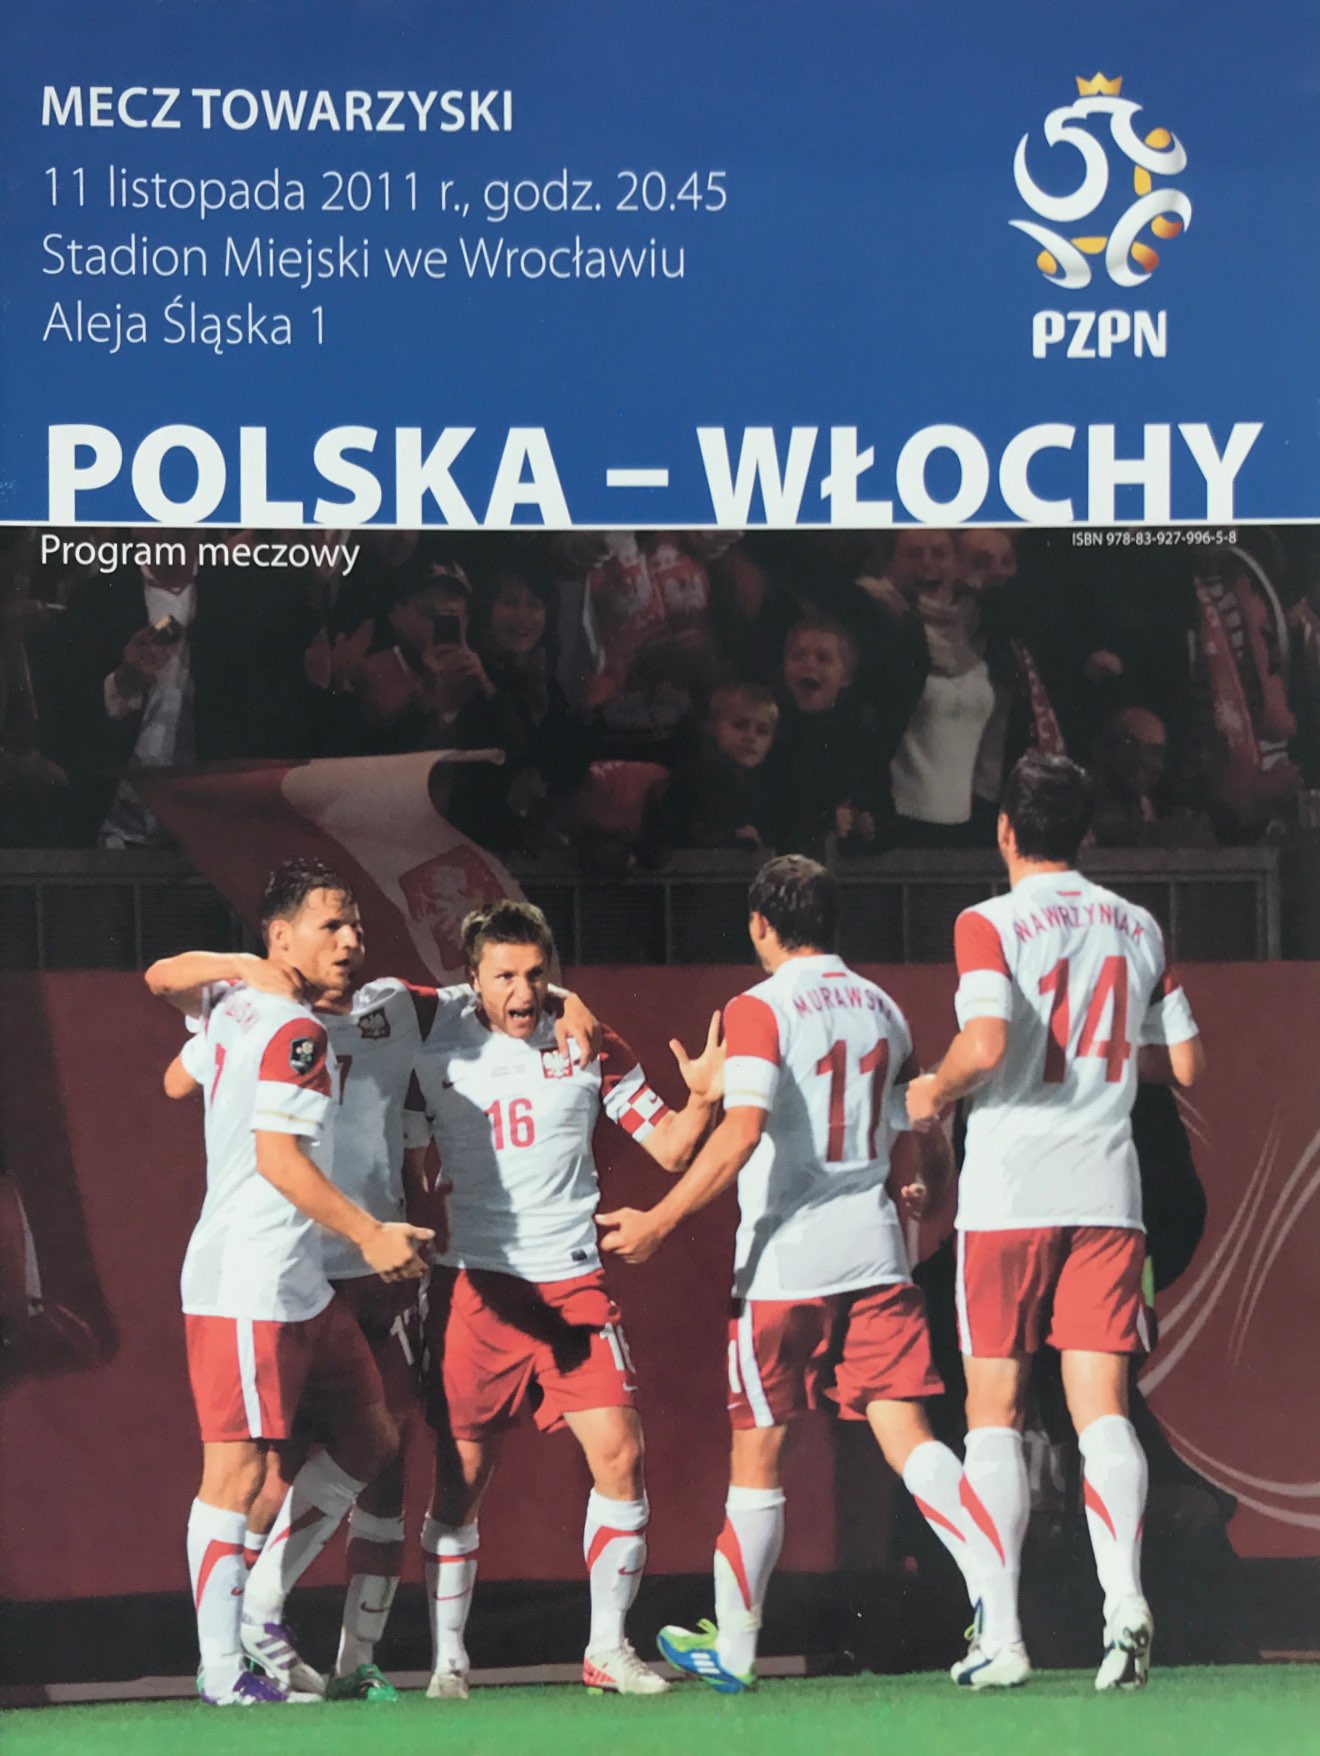 Program meczowy Polska - Włochy 0:2 (11.11.2011)